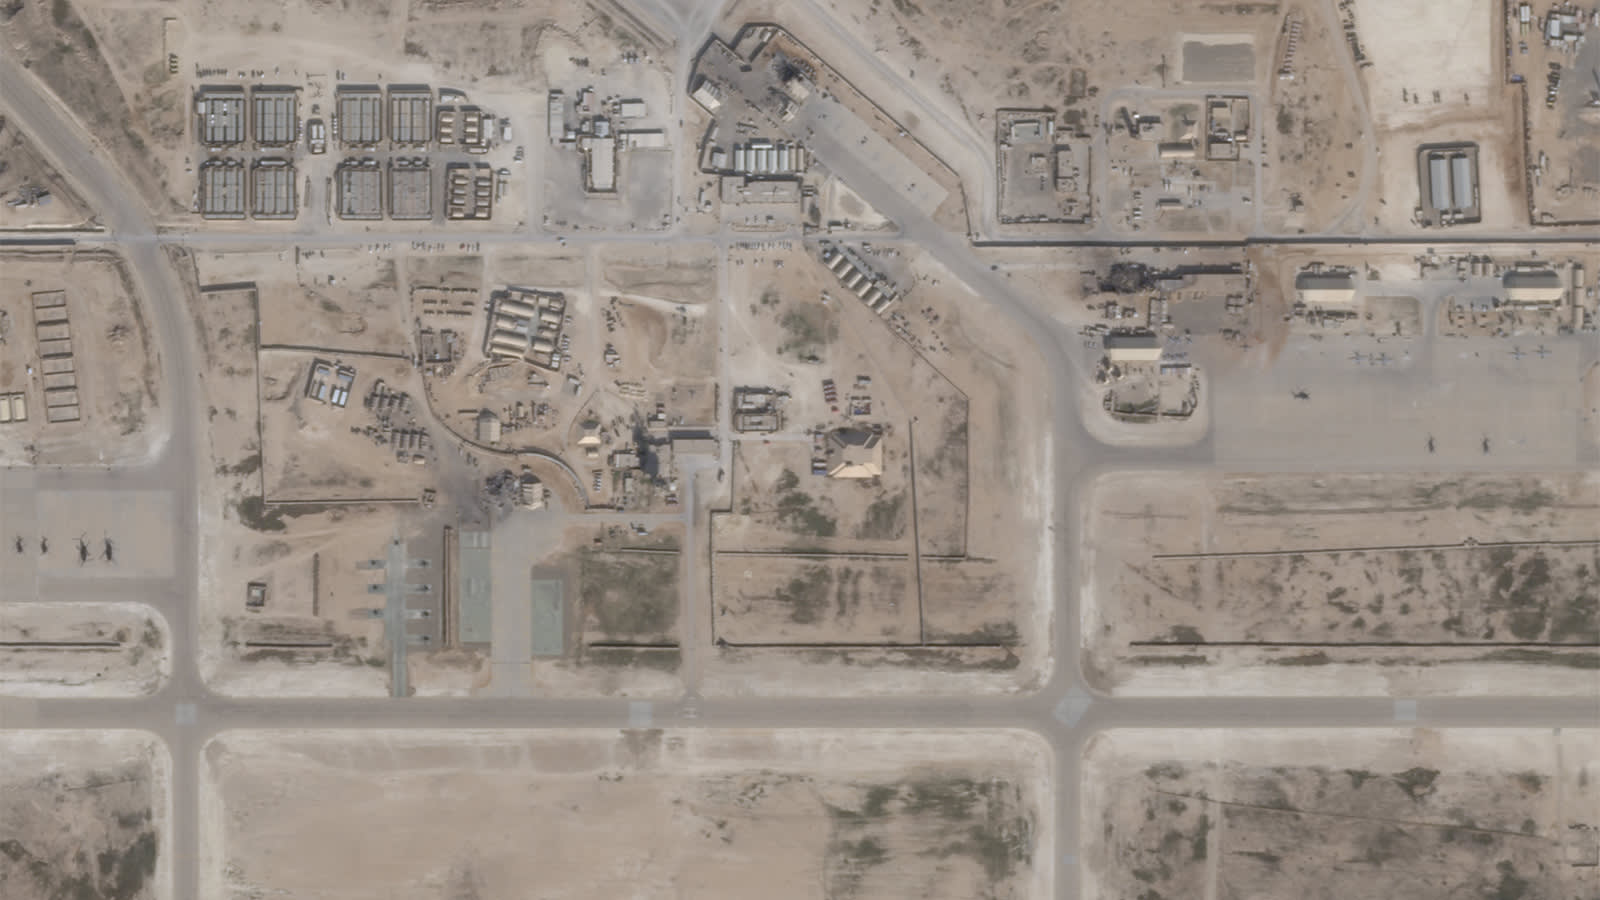 لقطات أقمار صناعية تُظهر حجم الأضرار بقاعدة عين الأسد عقب القصف الإيراني